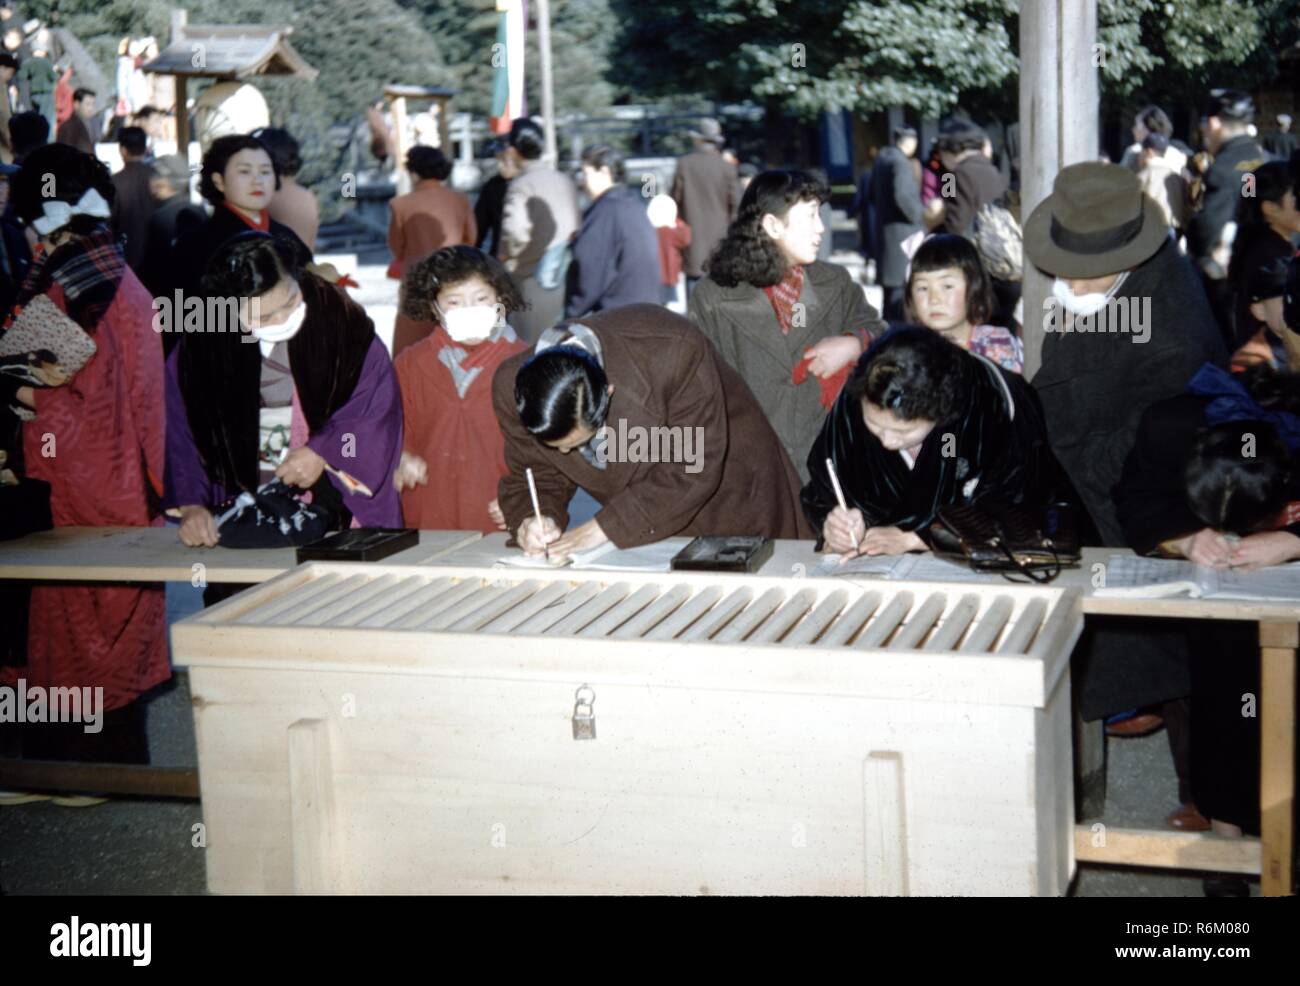 Photographie couleur, illustrant les hommes japonais, femmes et enfants, dans un cadre semblable à un parc, certains portant des kimonos d'hiver traditionnel et d'autres personnes portant des manteaux, avec quelques personnes de l'avant-plan penchées sur un comptoir et écrit dans les pages ouvertes de livrets, et un cadre blanc ou de froid dans le premier plan, probablement photographié au Japon au cours de la moitié du xxe siècle, 1965. () Banque D'Images